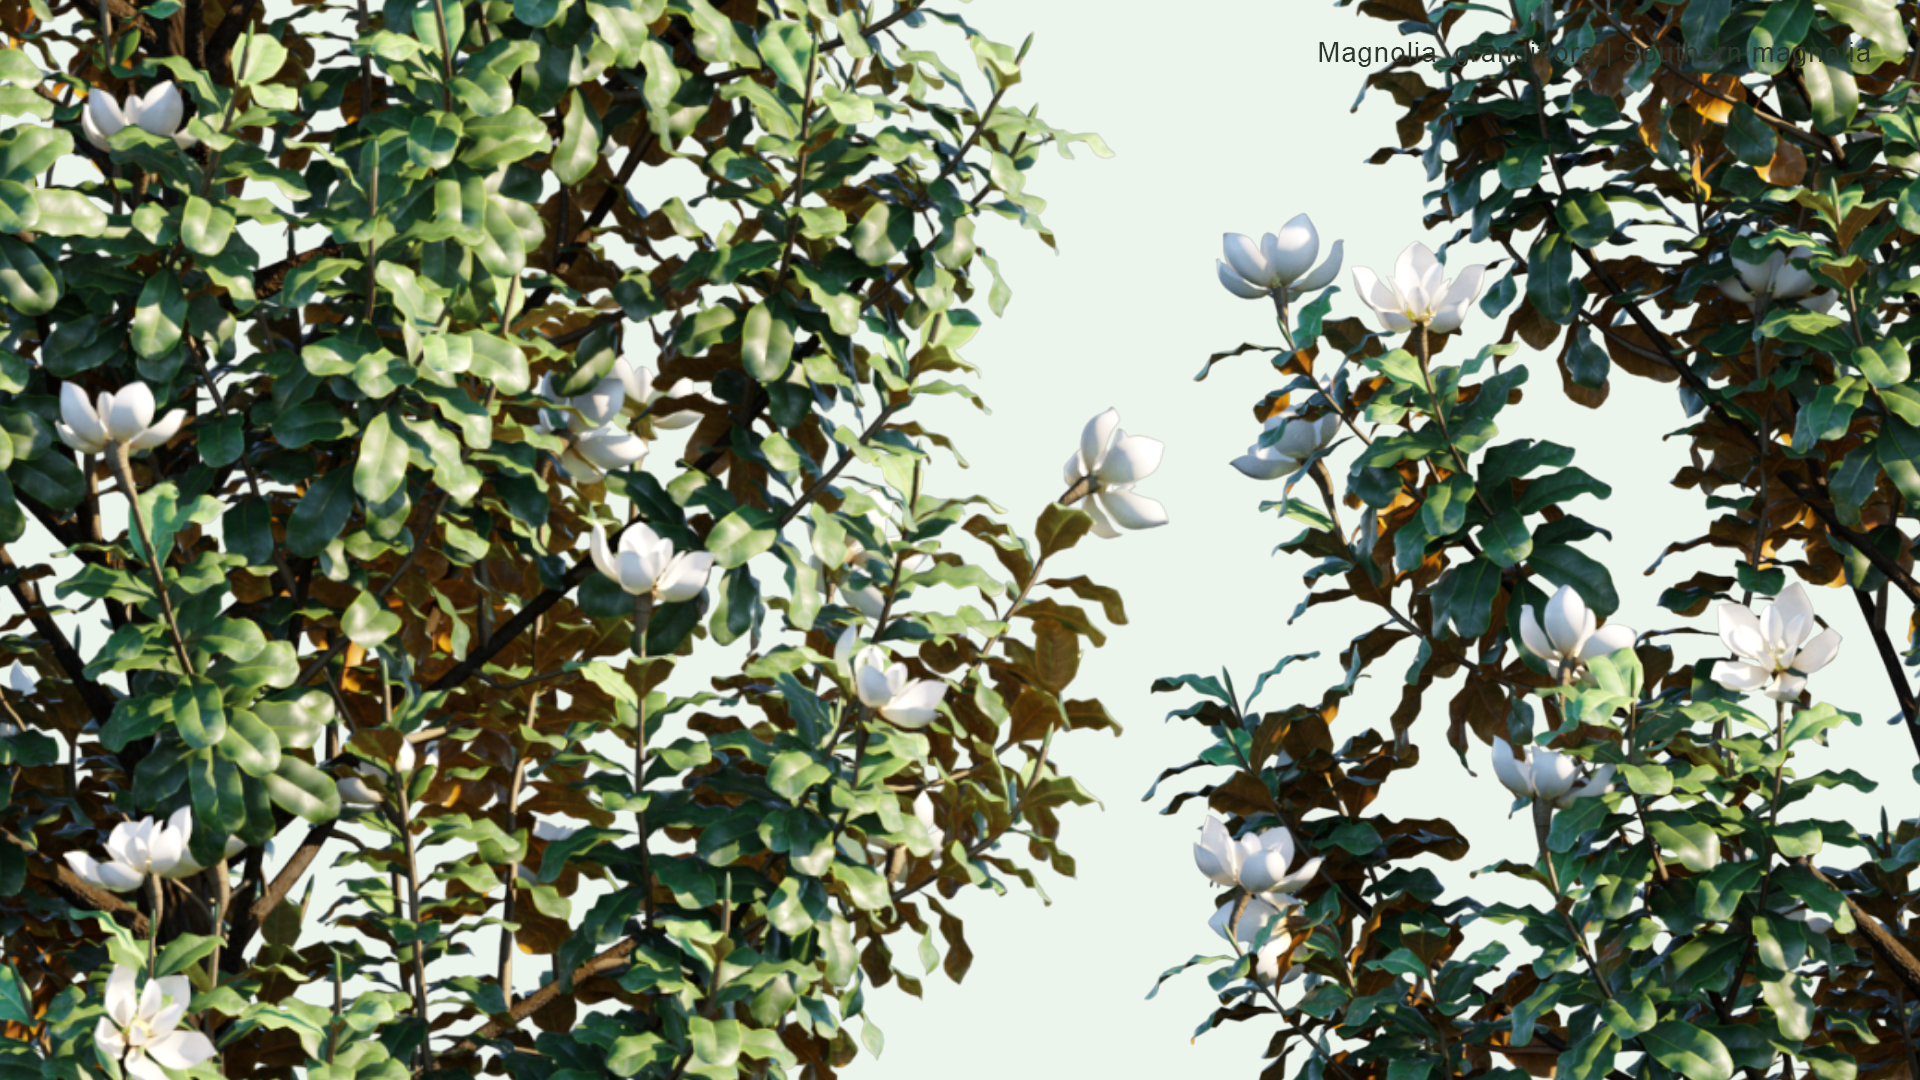 2D Magnolia Grandiflora - Southern Magnolia, Bull Bay